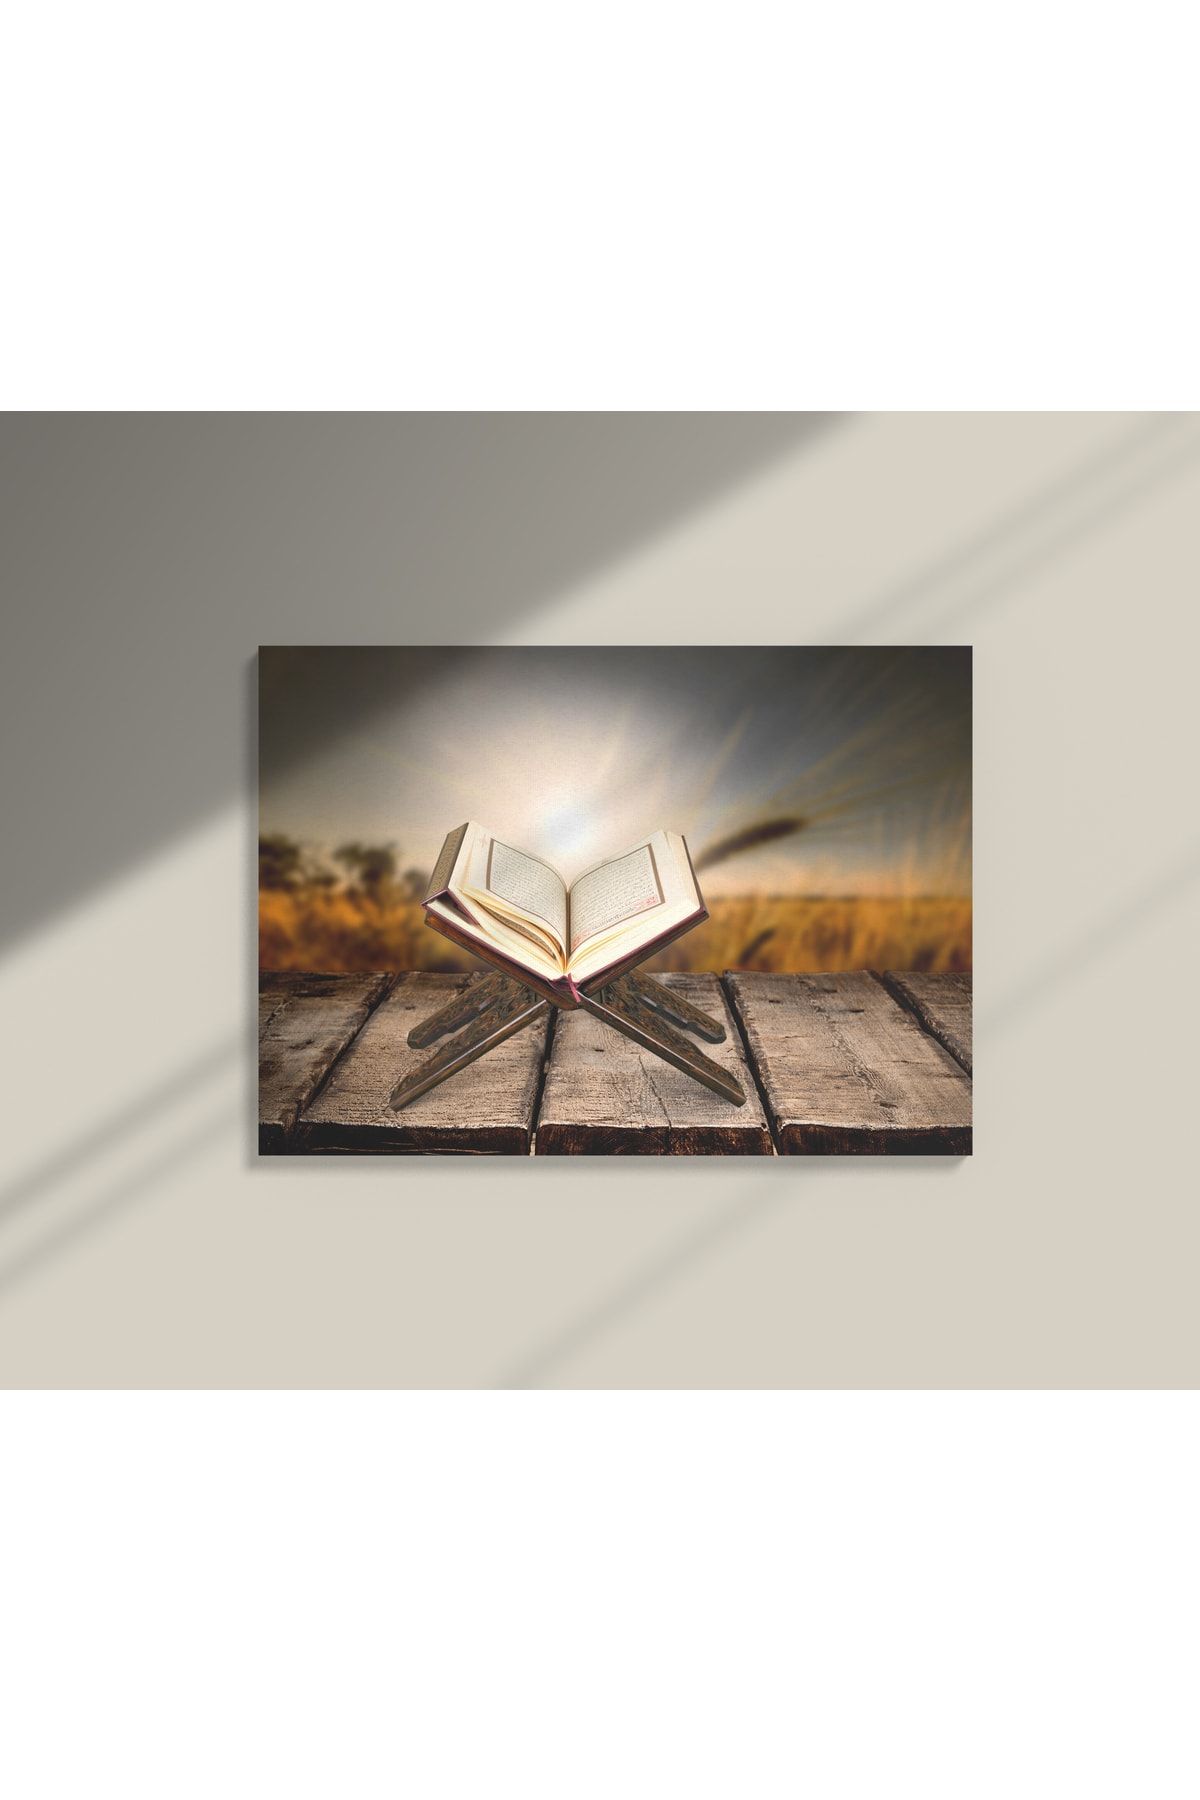 Genel Markalar Kutsal Kitap Kur'an Ardından Doğan Güneş Dekoratif Yatay Kanvas Duvar Tablosu